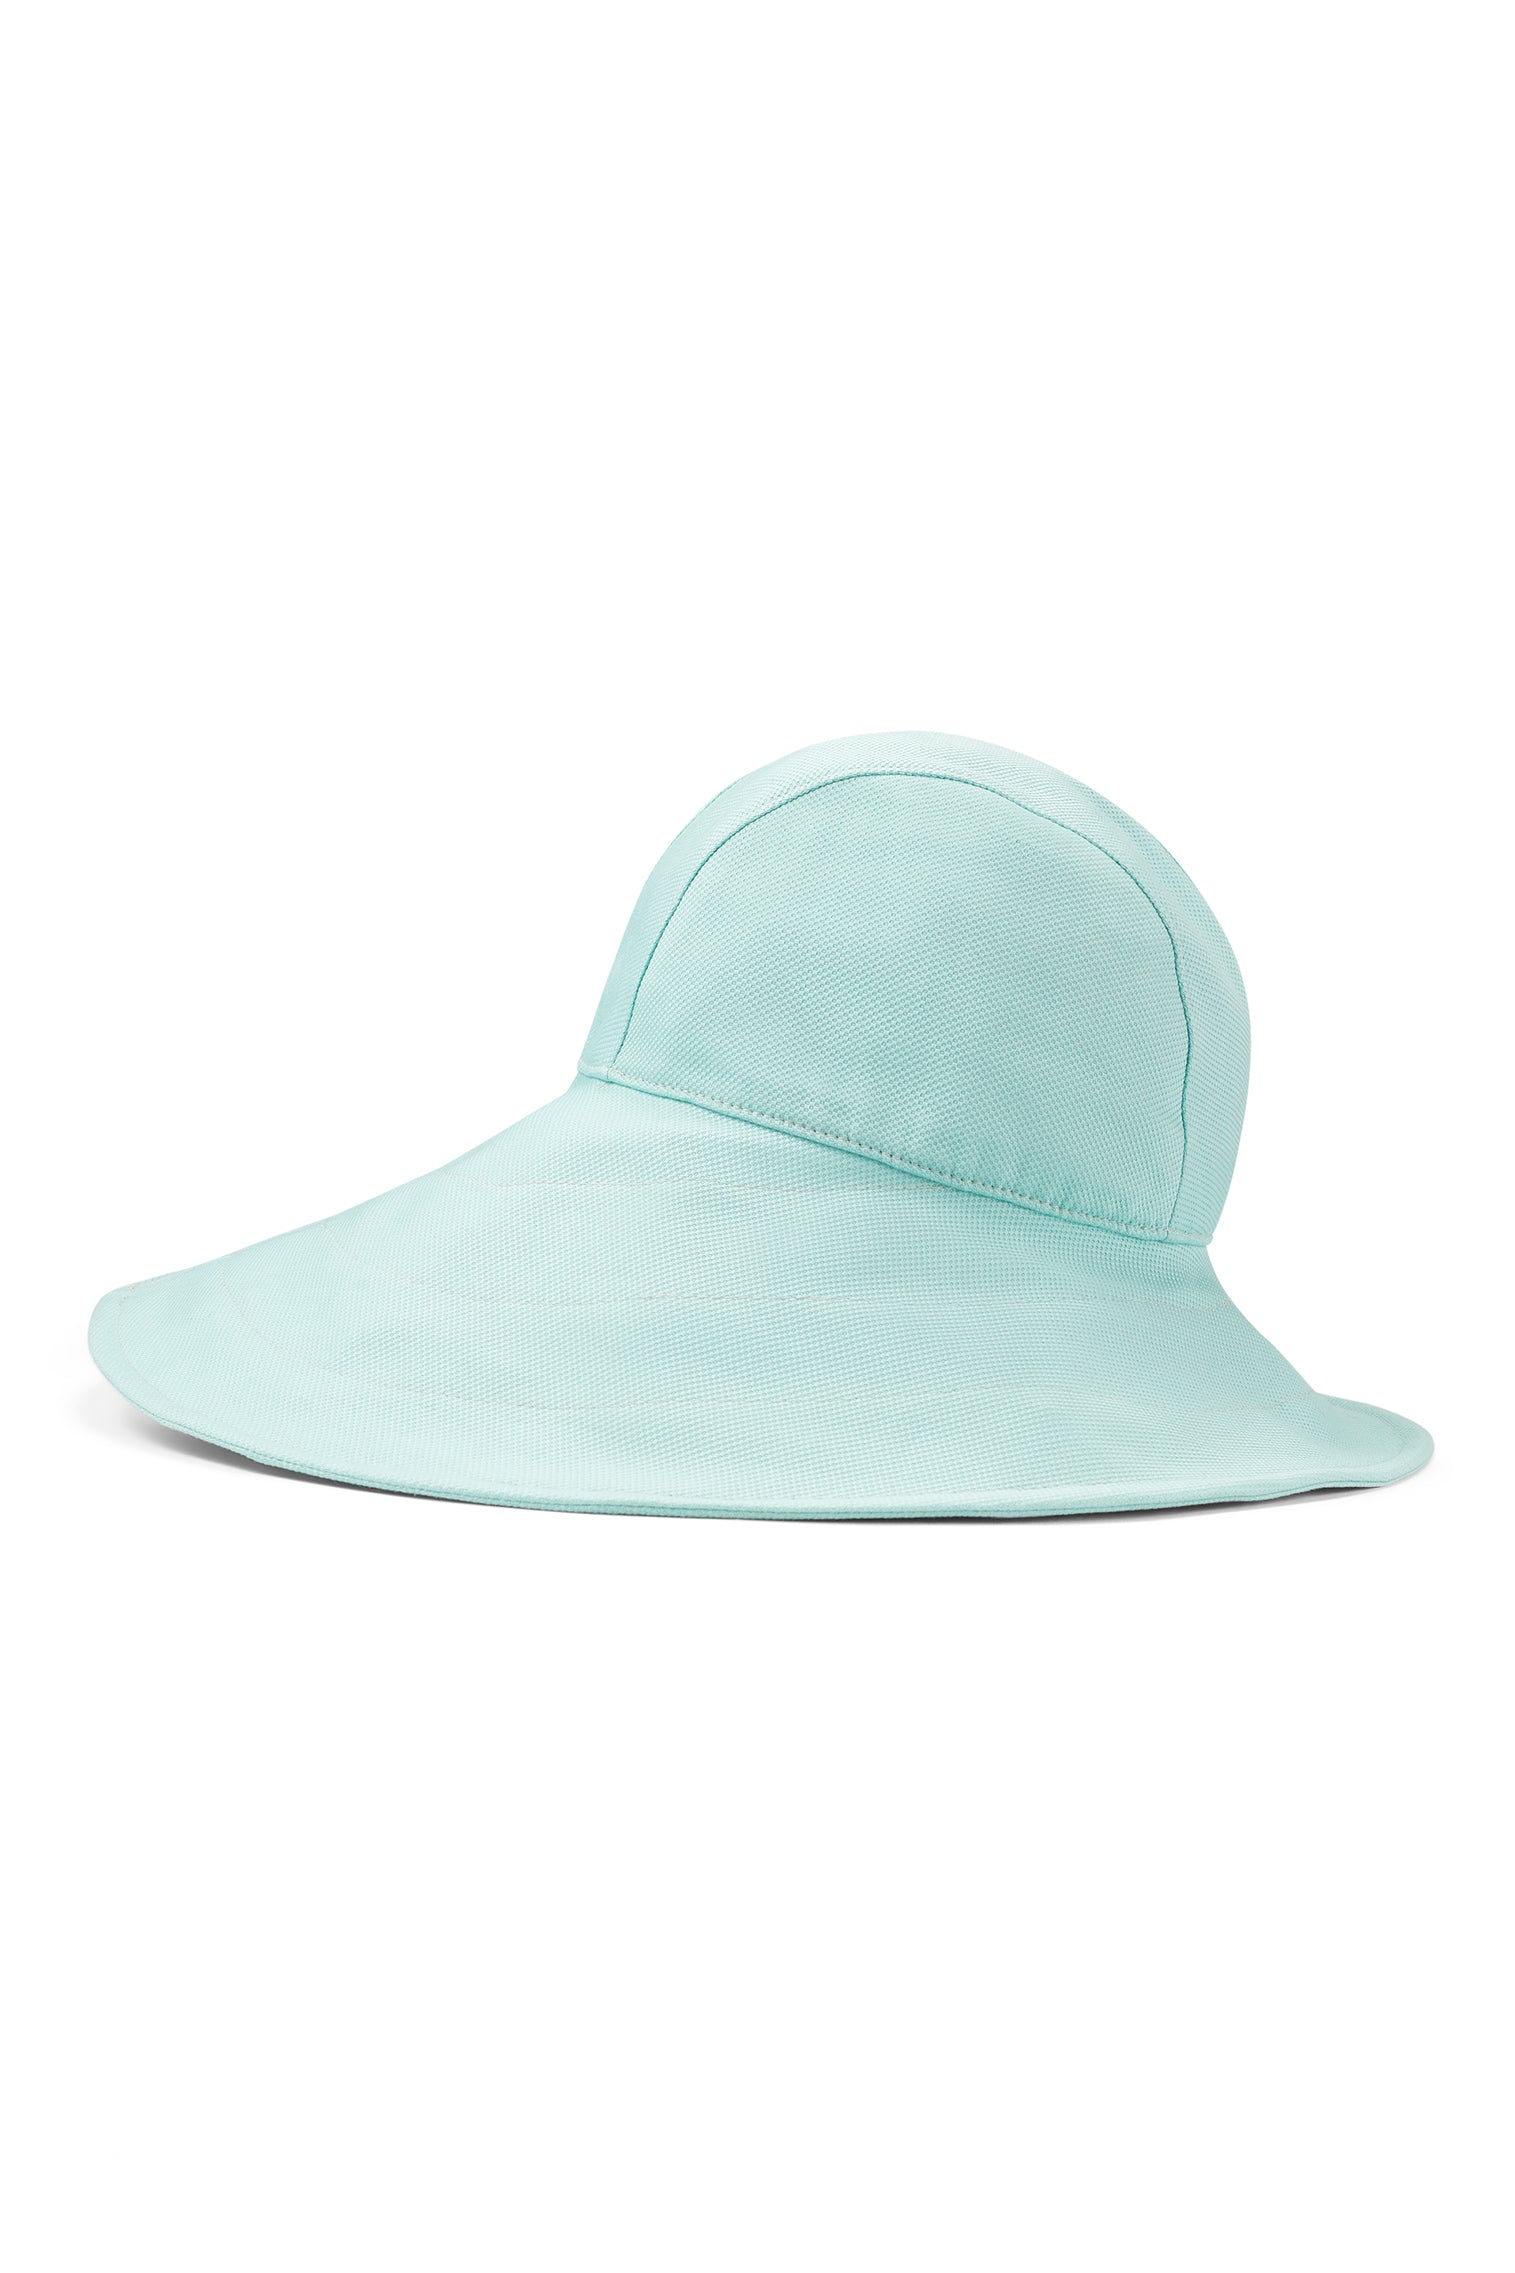 Elowyn Sou'Wester Sun Hat - Packable Hats for Travel - Lock & Co. Hatters London UK